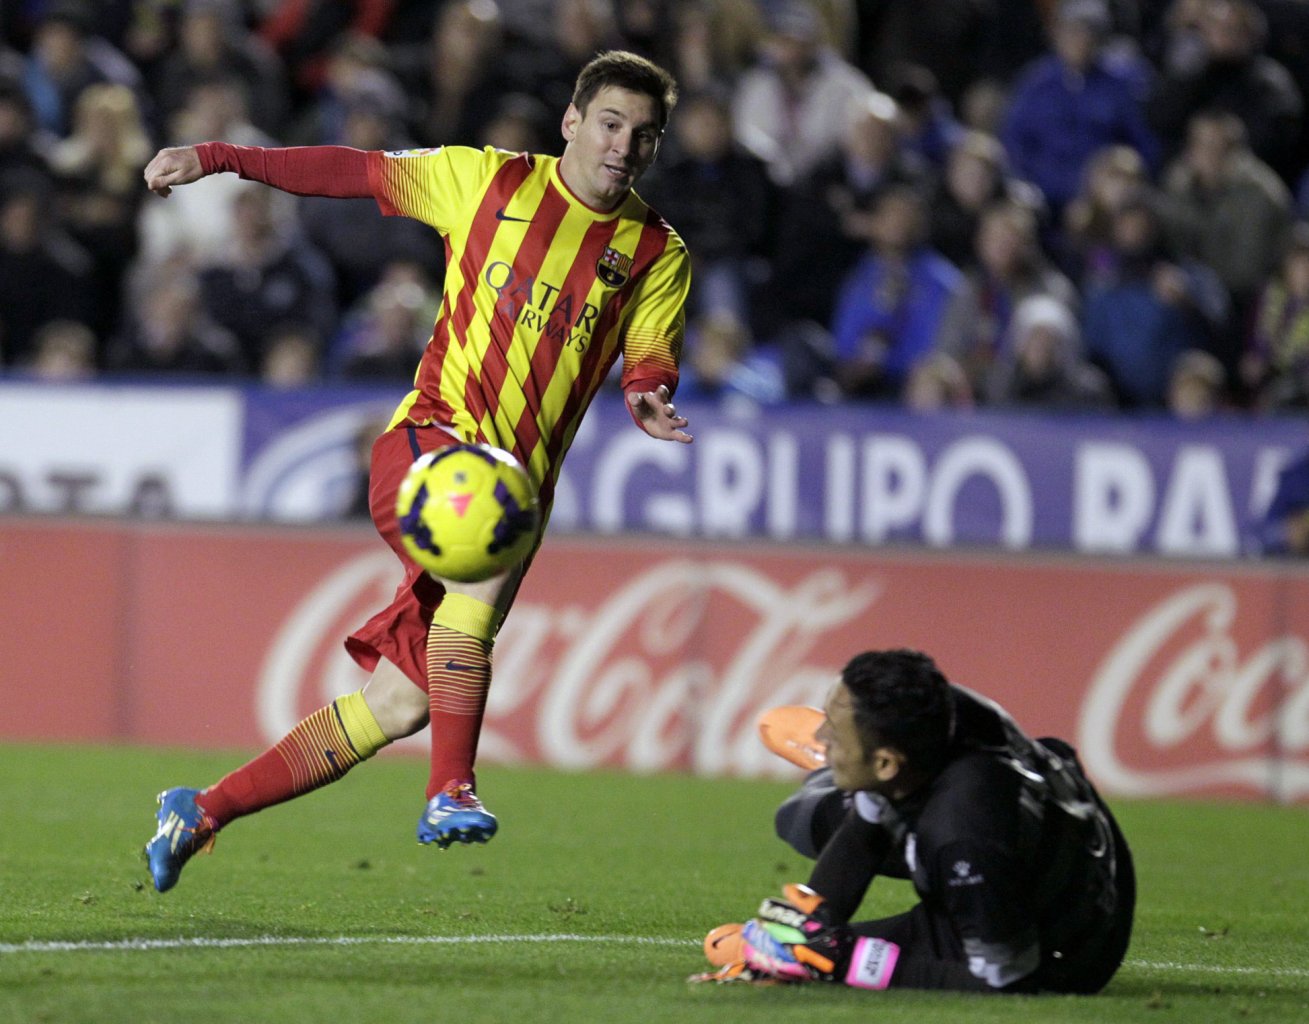 Lionel Messi attempting to score in Levante vs Barcelona